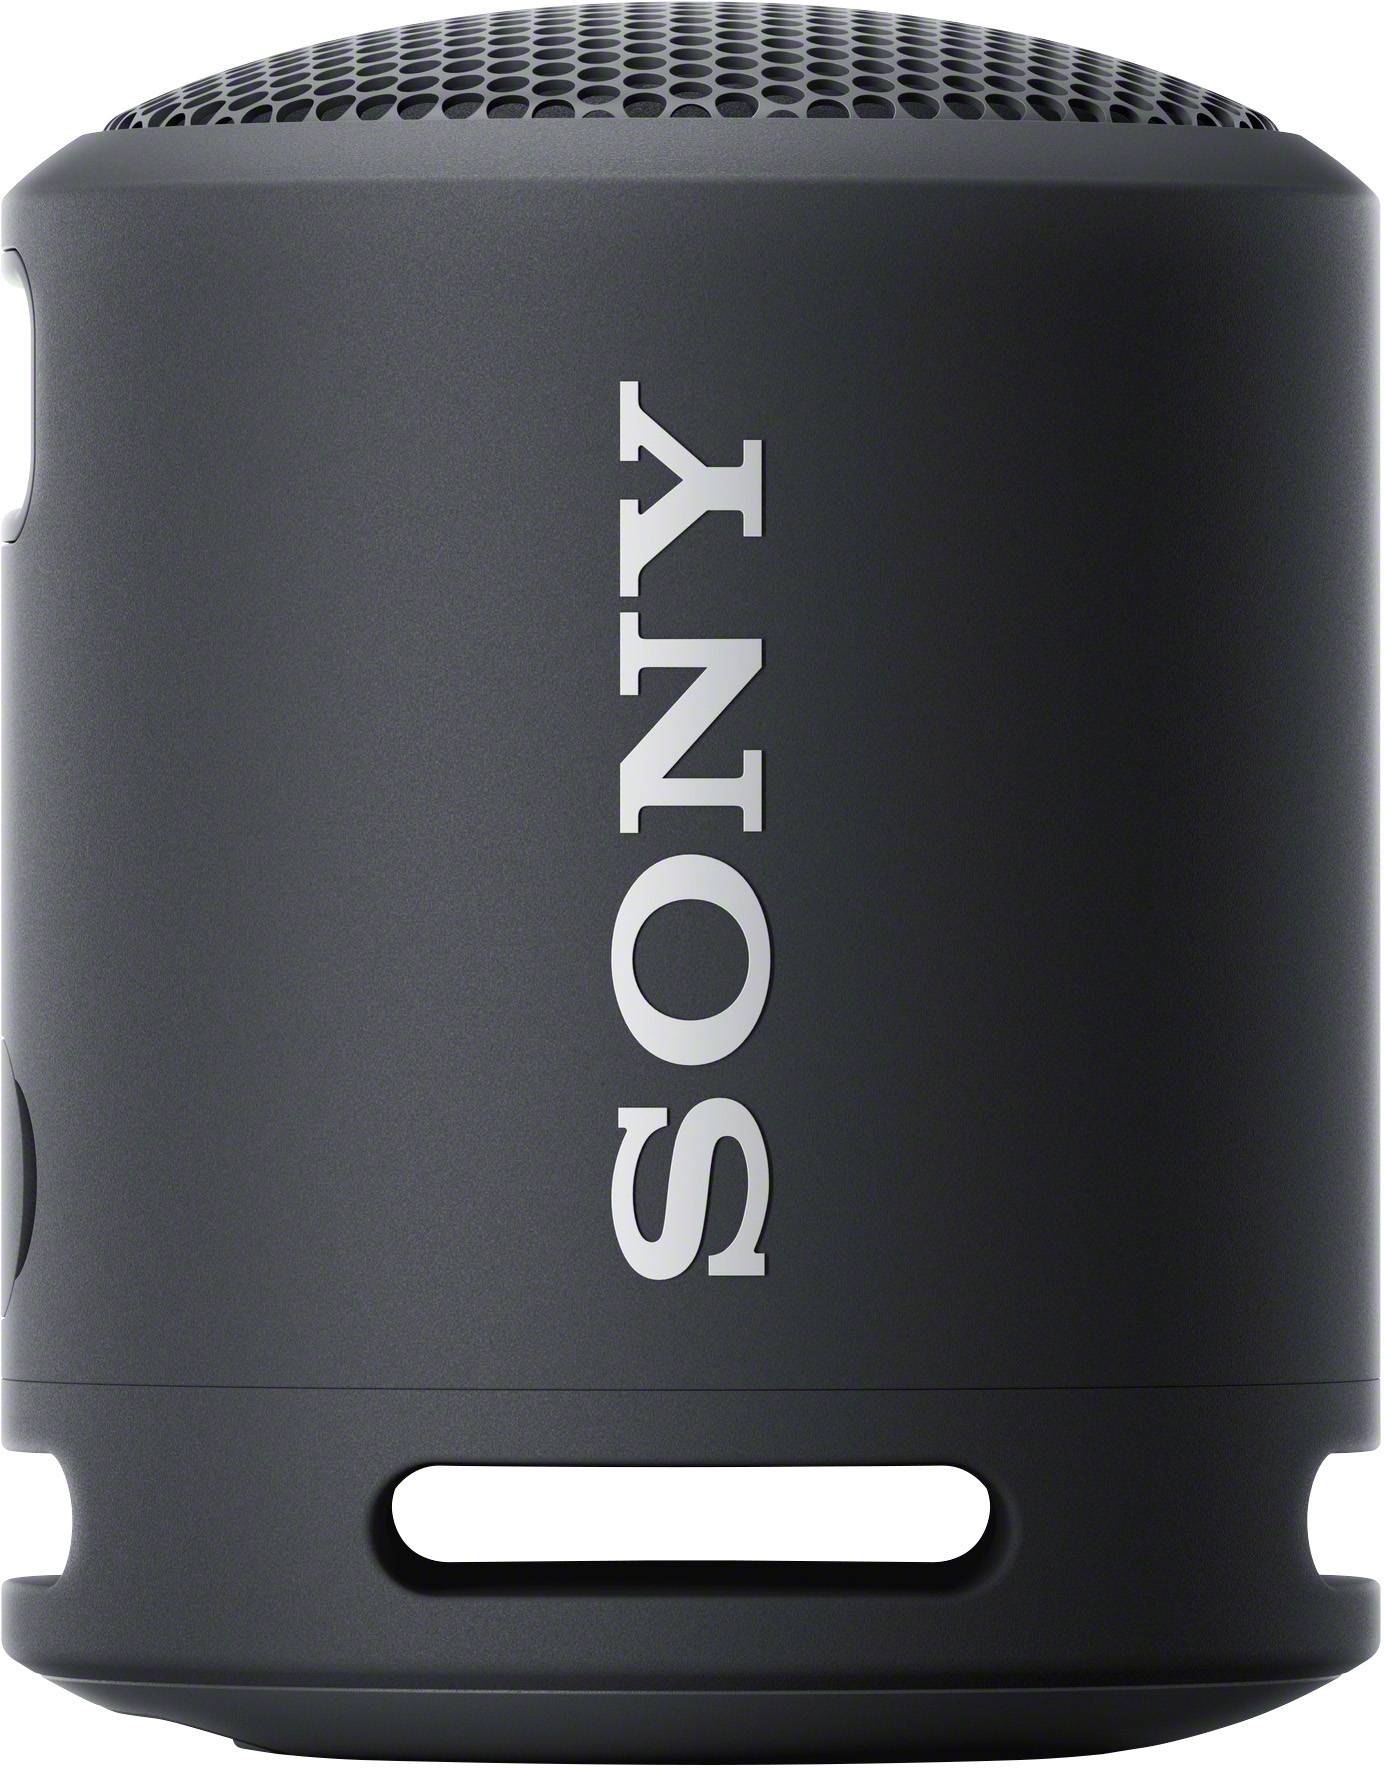 Freisprechfunktion, SRS-XB13 Schwarz Bluetooth® Lautsprecher kaufen Sony Wasserfest staubfest,